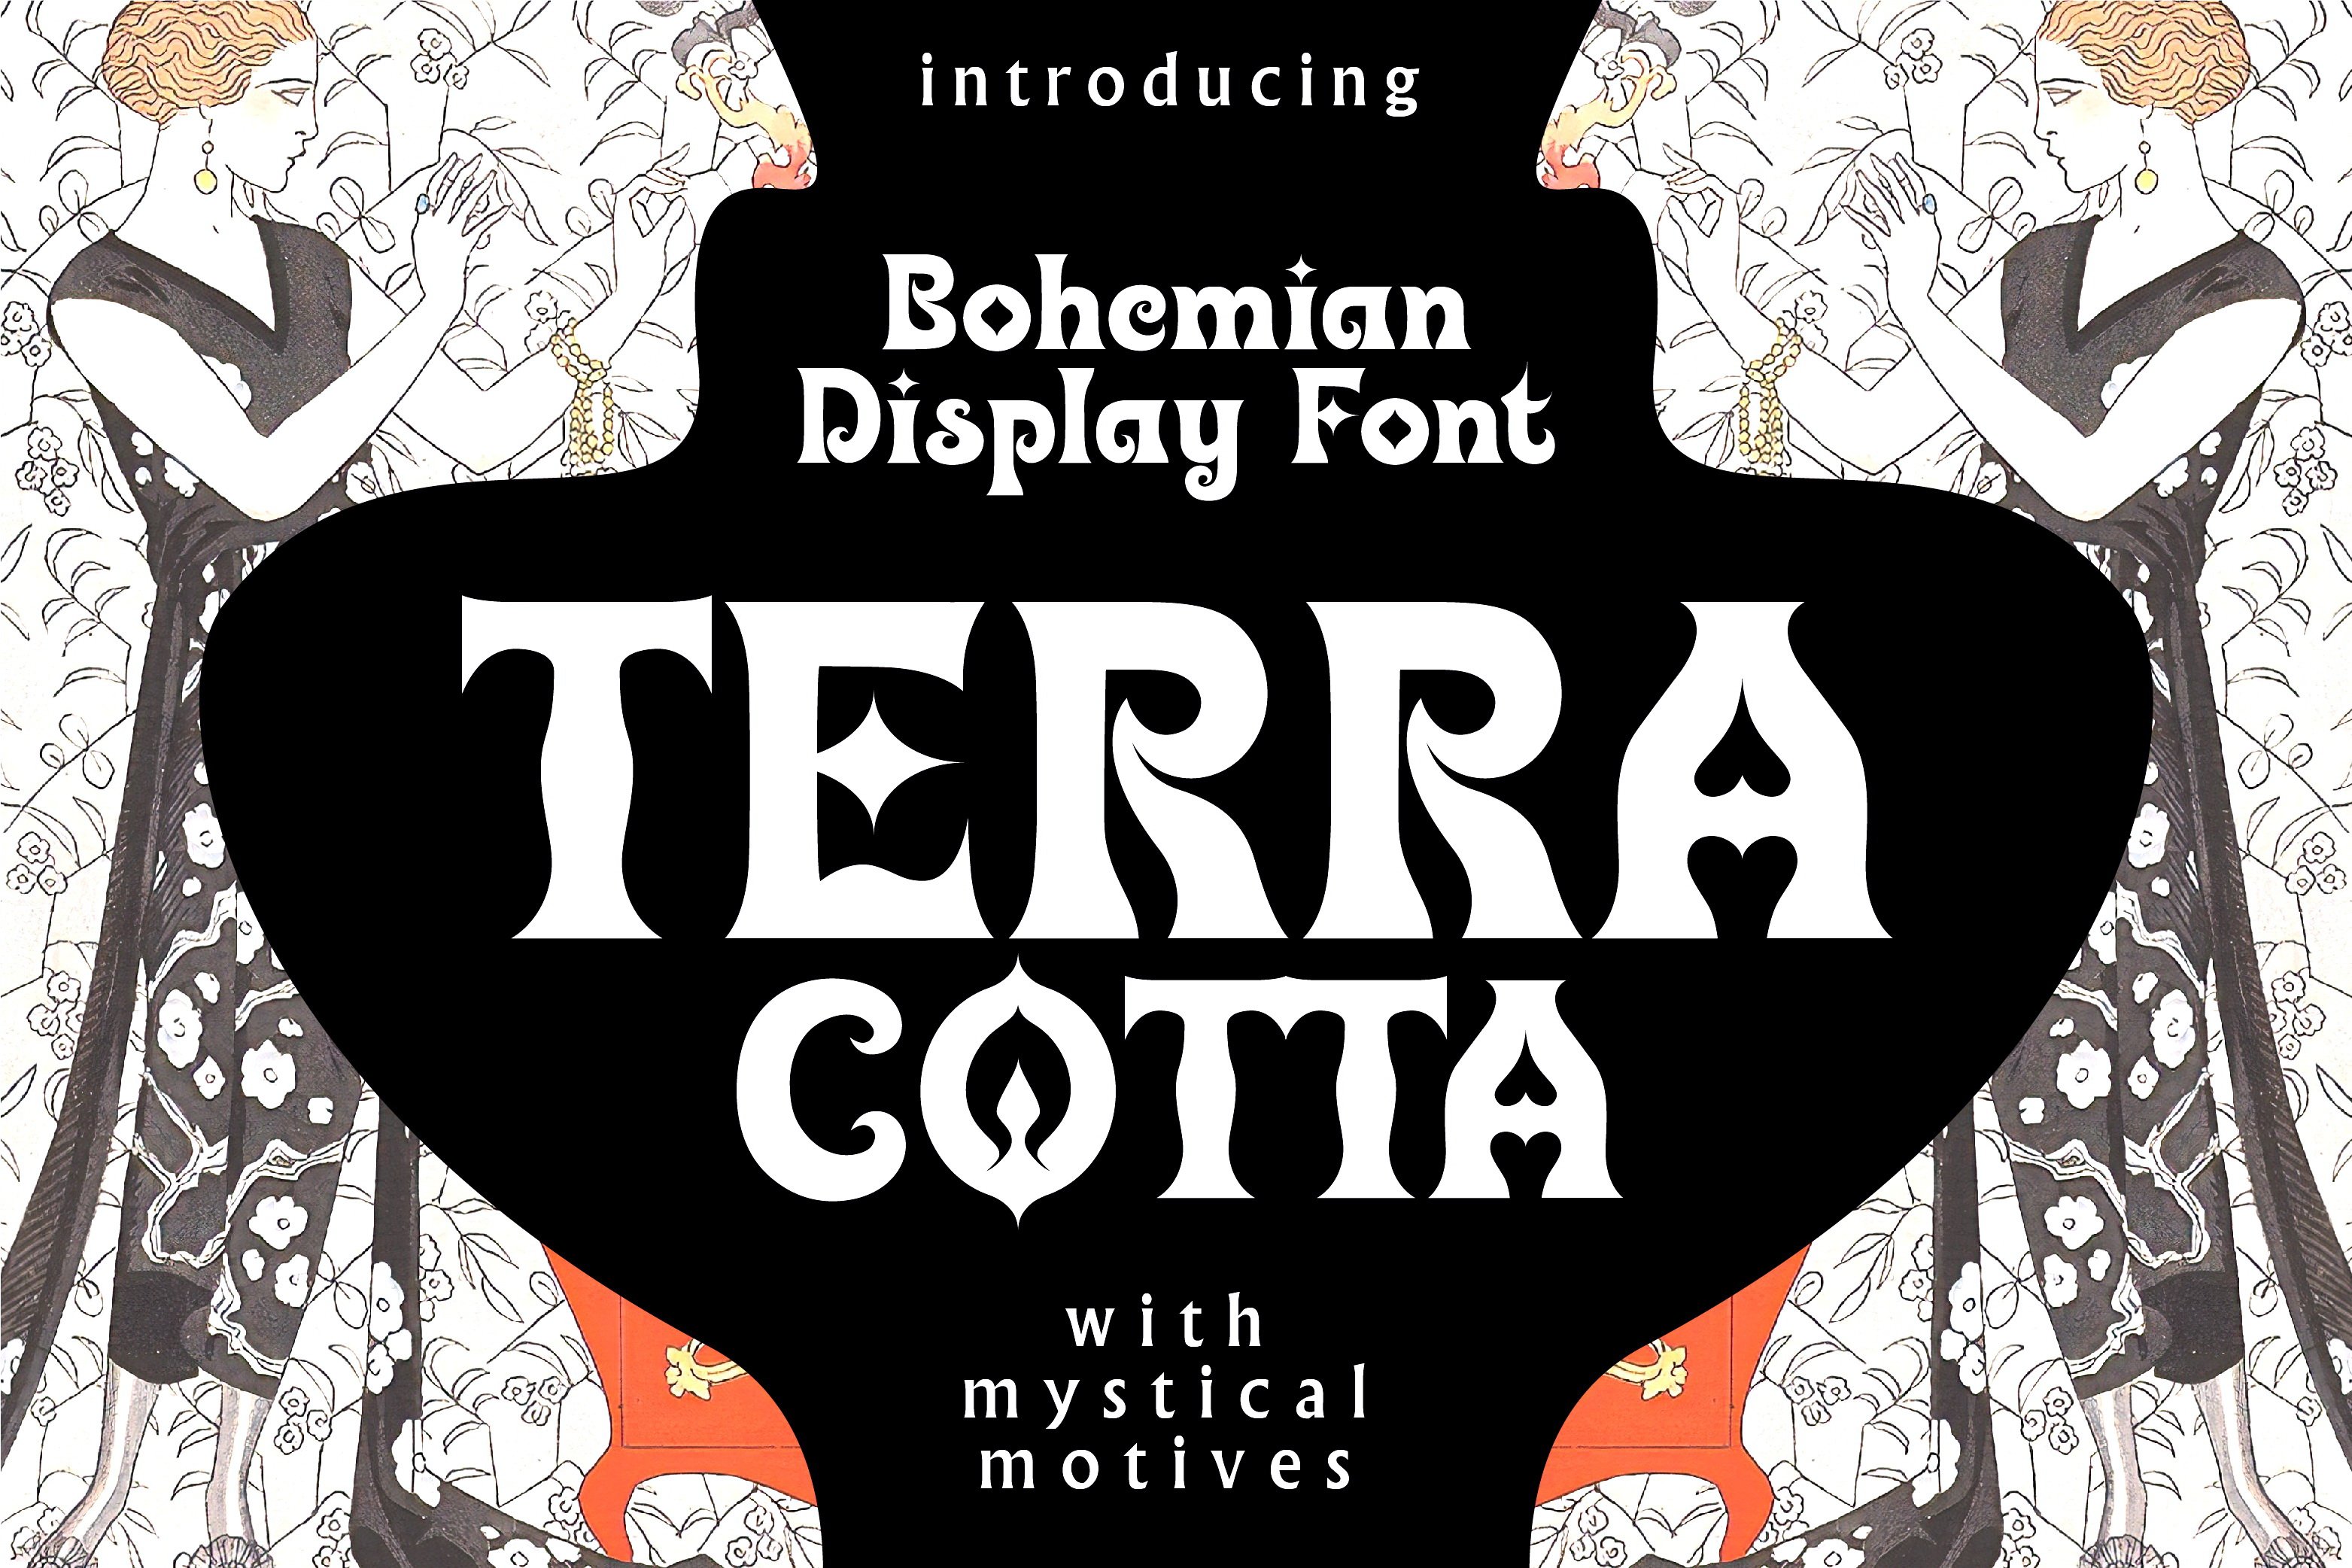 Terra Cotta - Bohemian Display Font cover image.